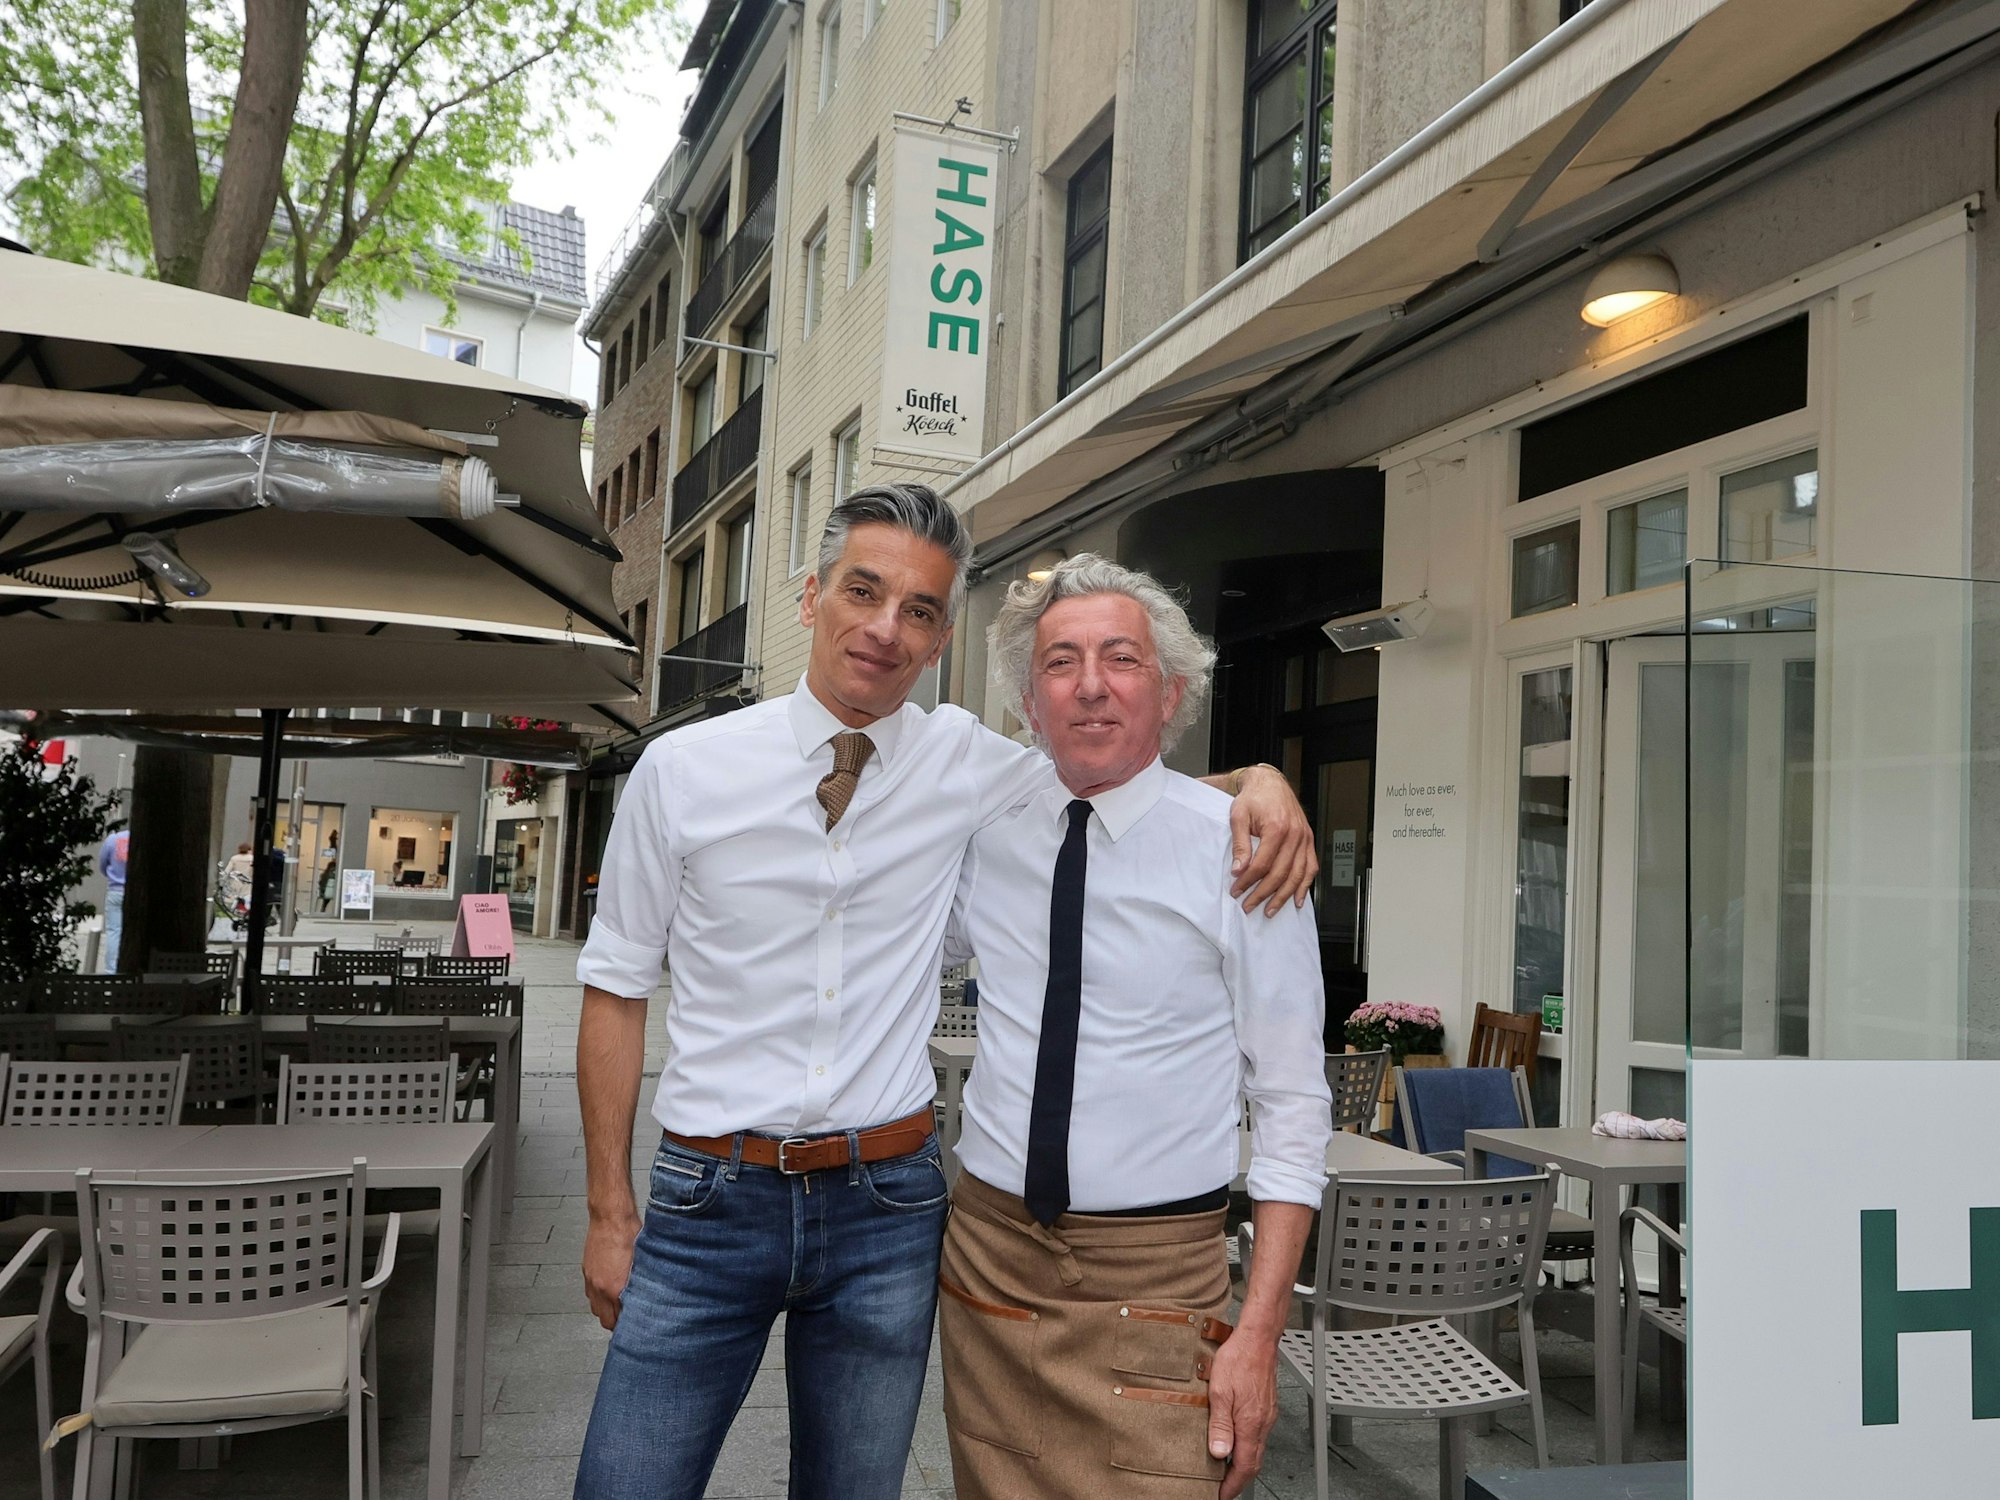 Inhaber von links: Geschäftsführer Babok Navaei, Restaurantleiter Sergio Clerici

